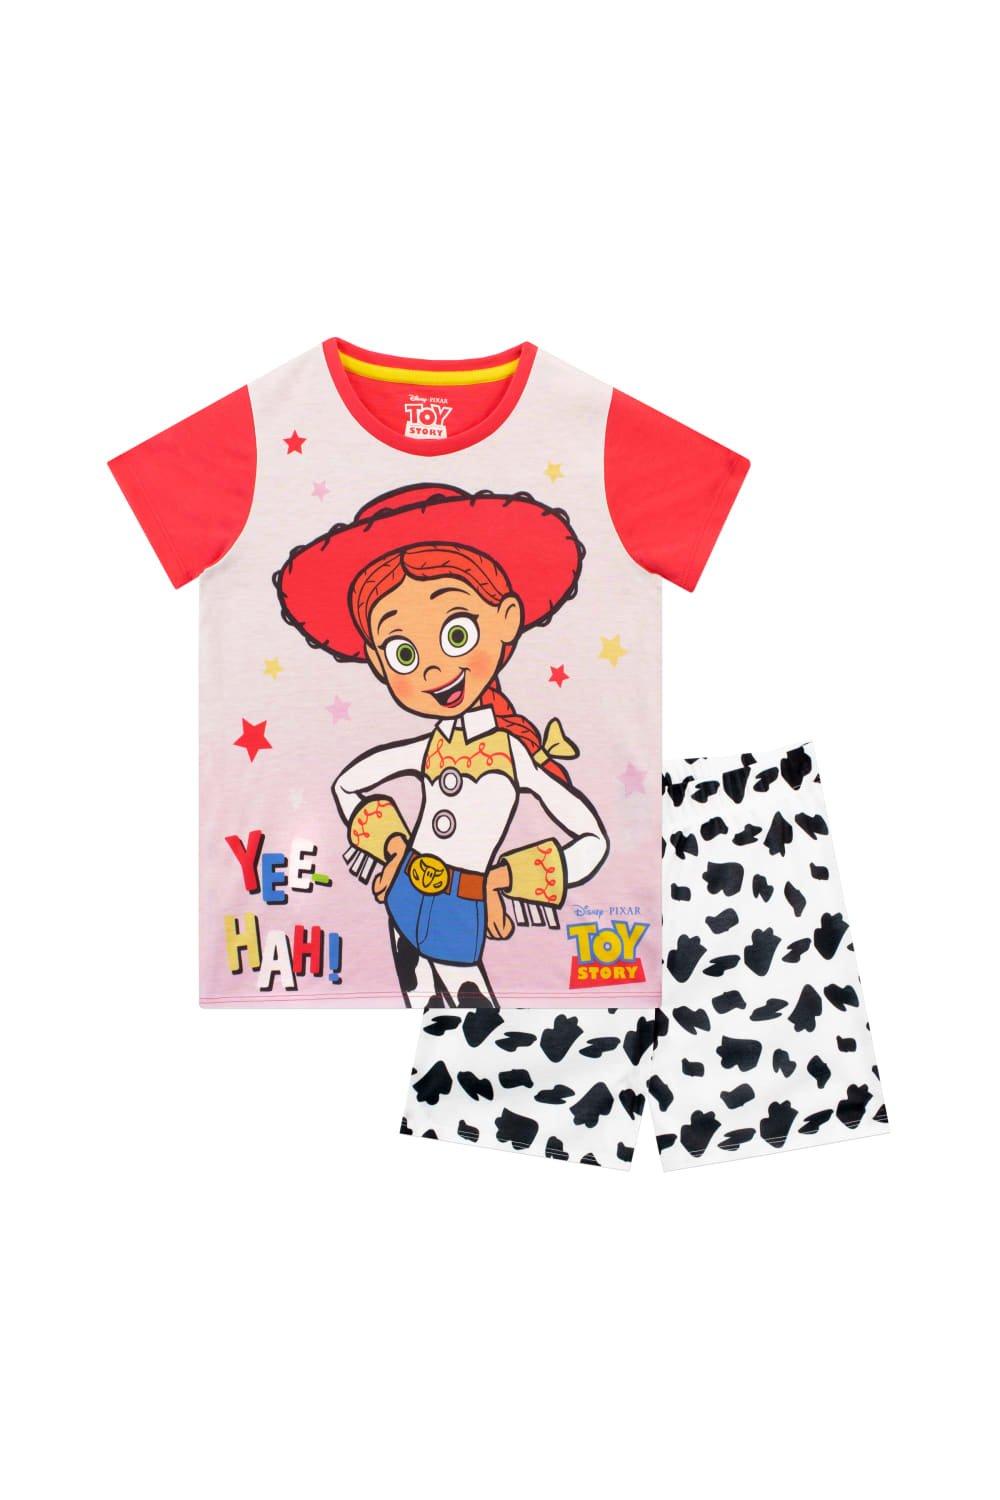 Toy Story Jessie Short Pyjamas